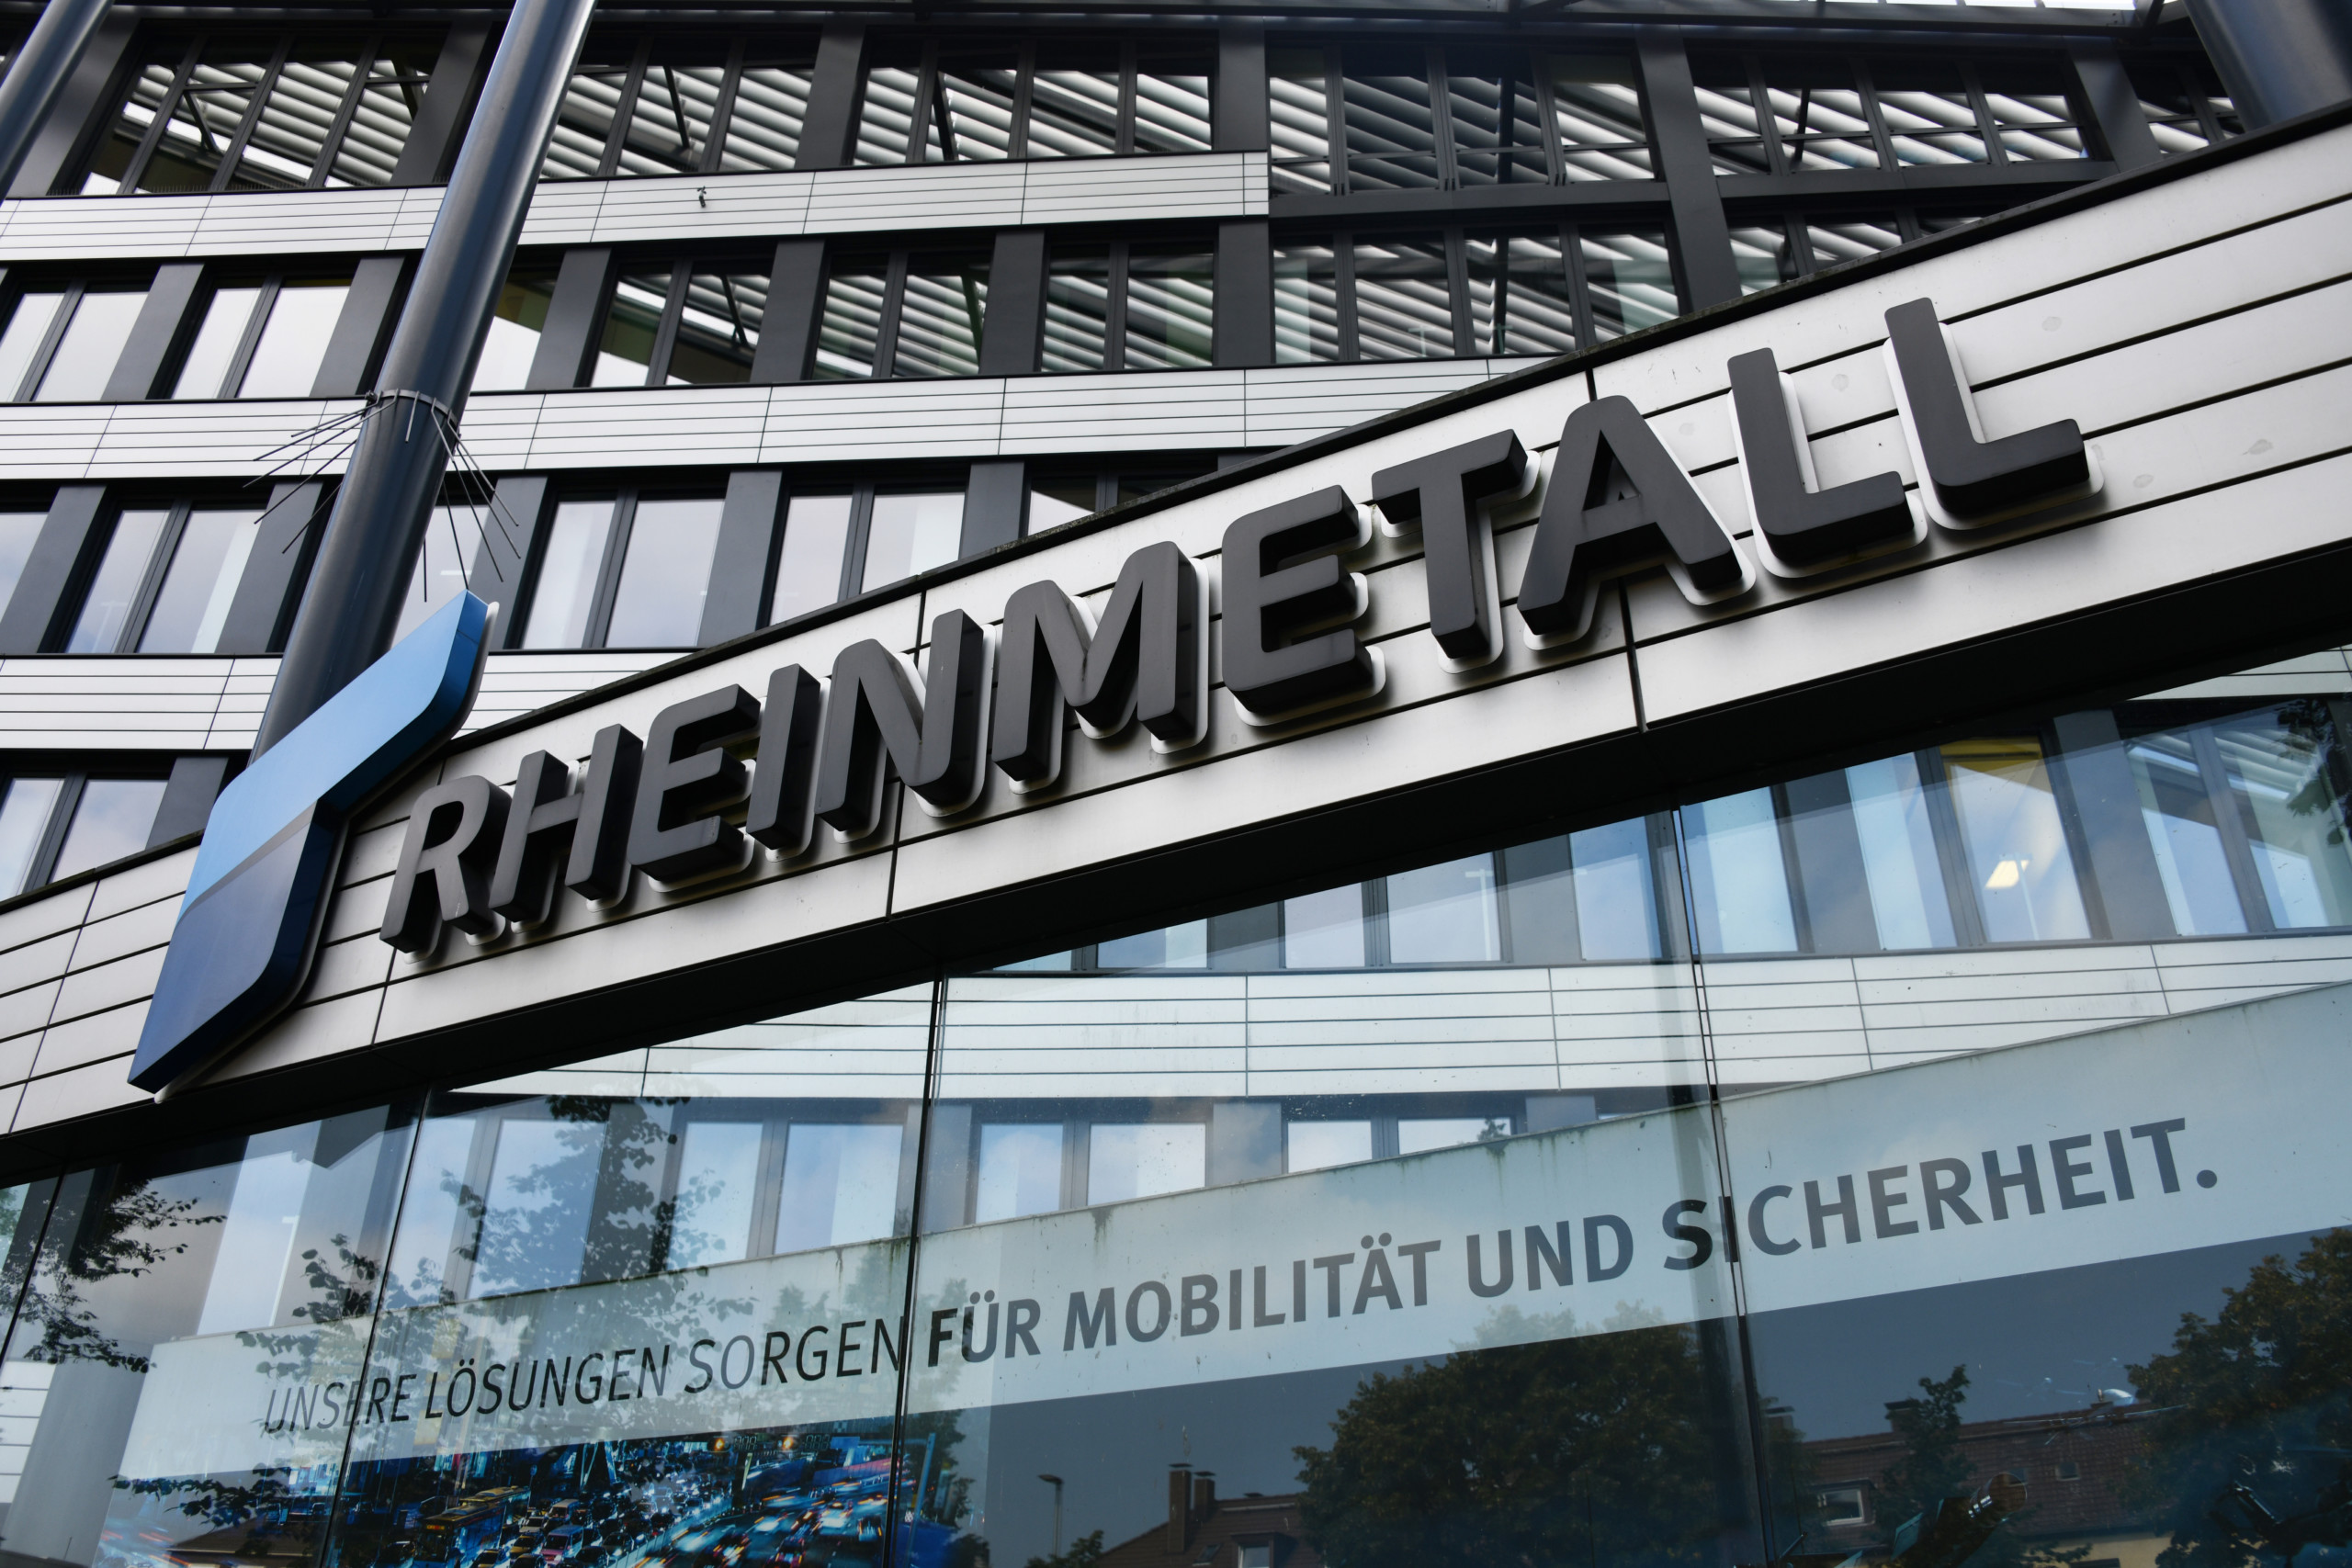 Rheinmetall prognostiziert ein weiteres Jahr mit Umsatzwachstum